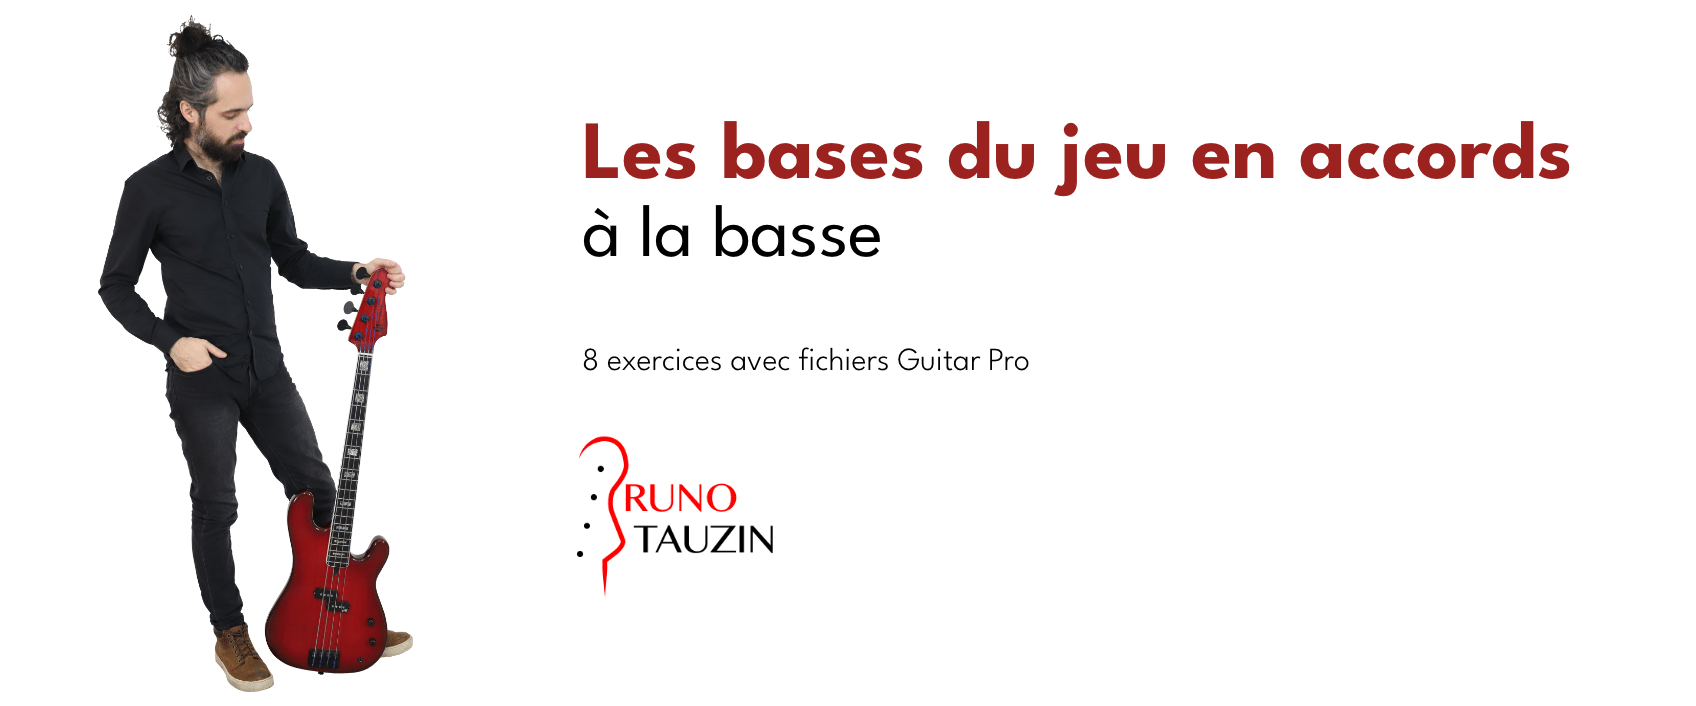 JE DÉBUTE LA BASSE - Cours 2 🎸 ACCORDAGE 